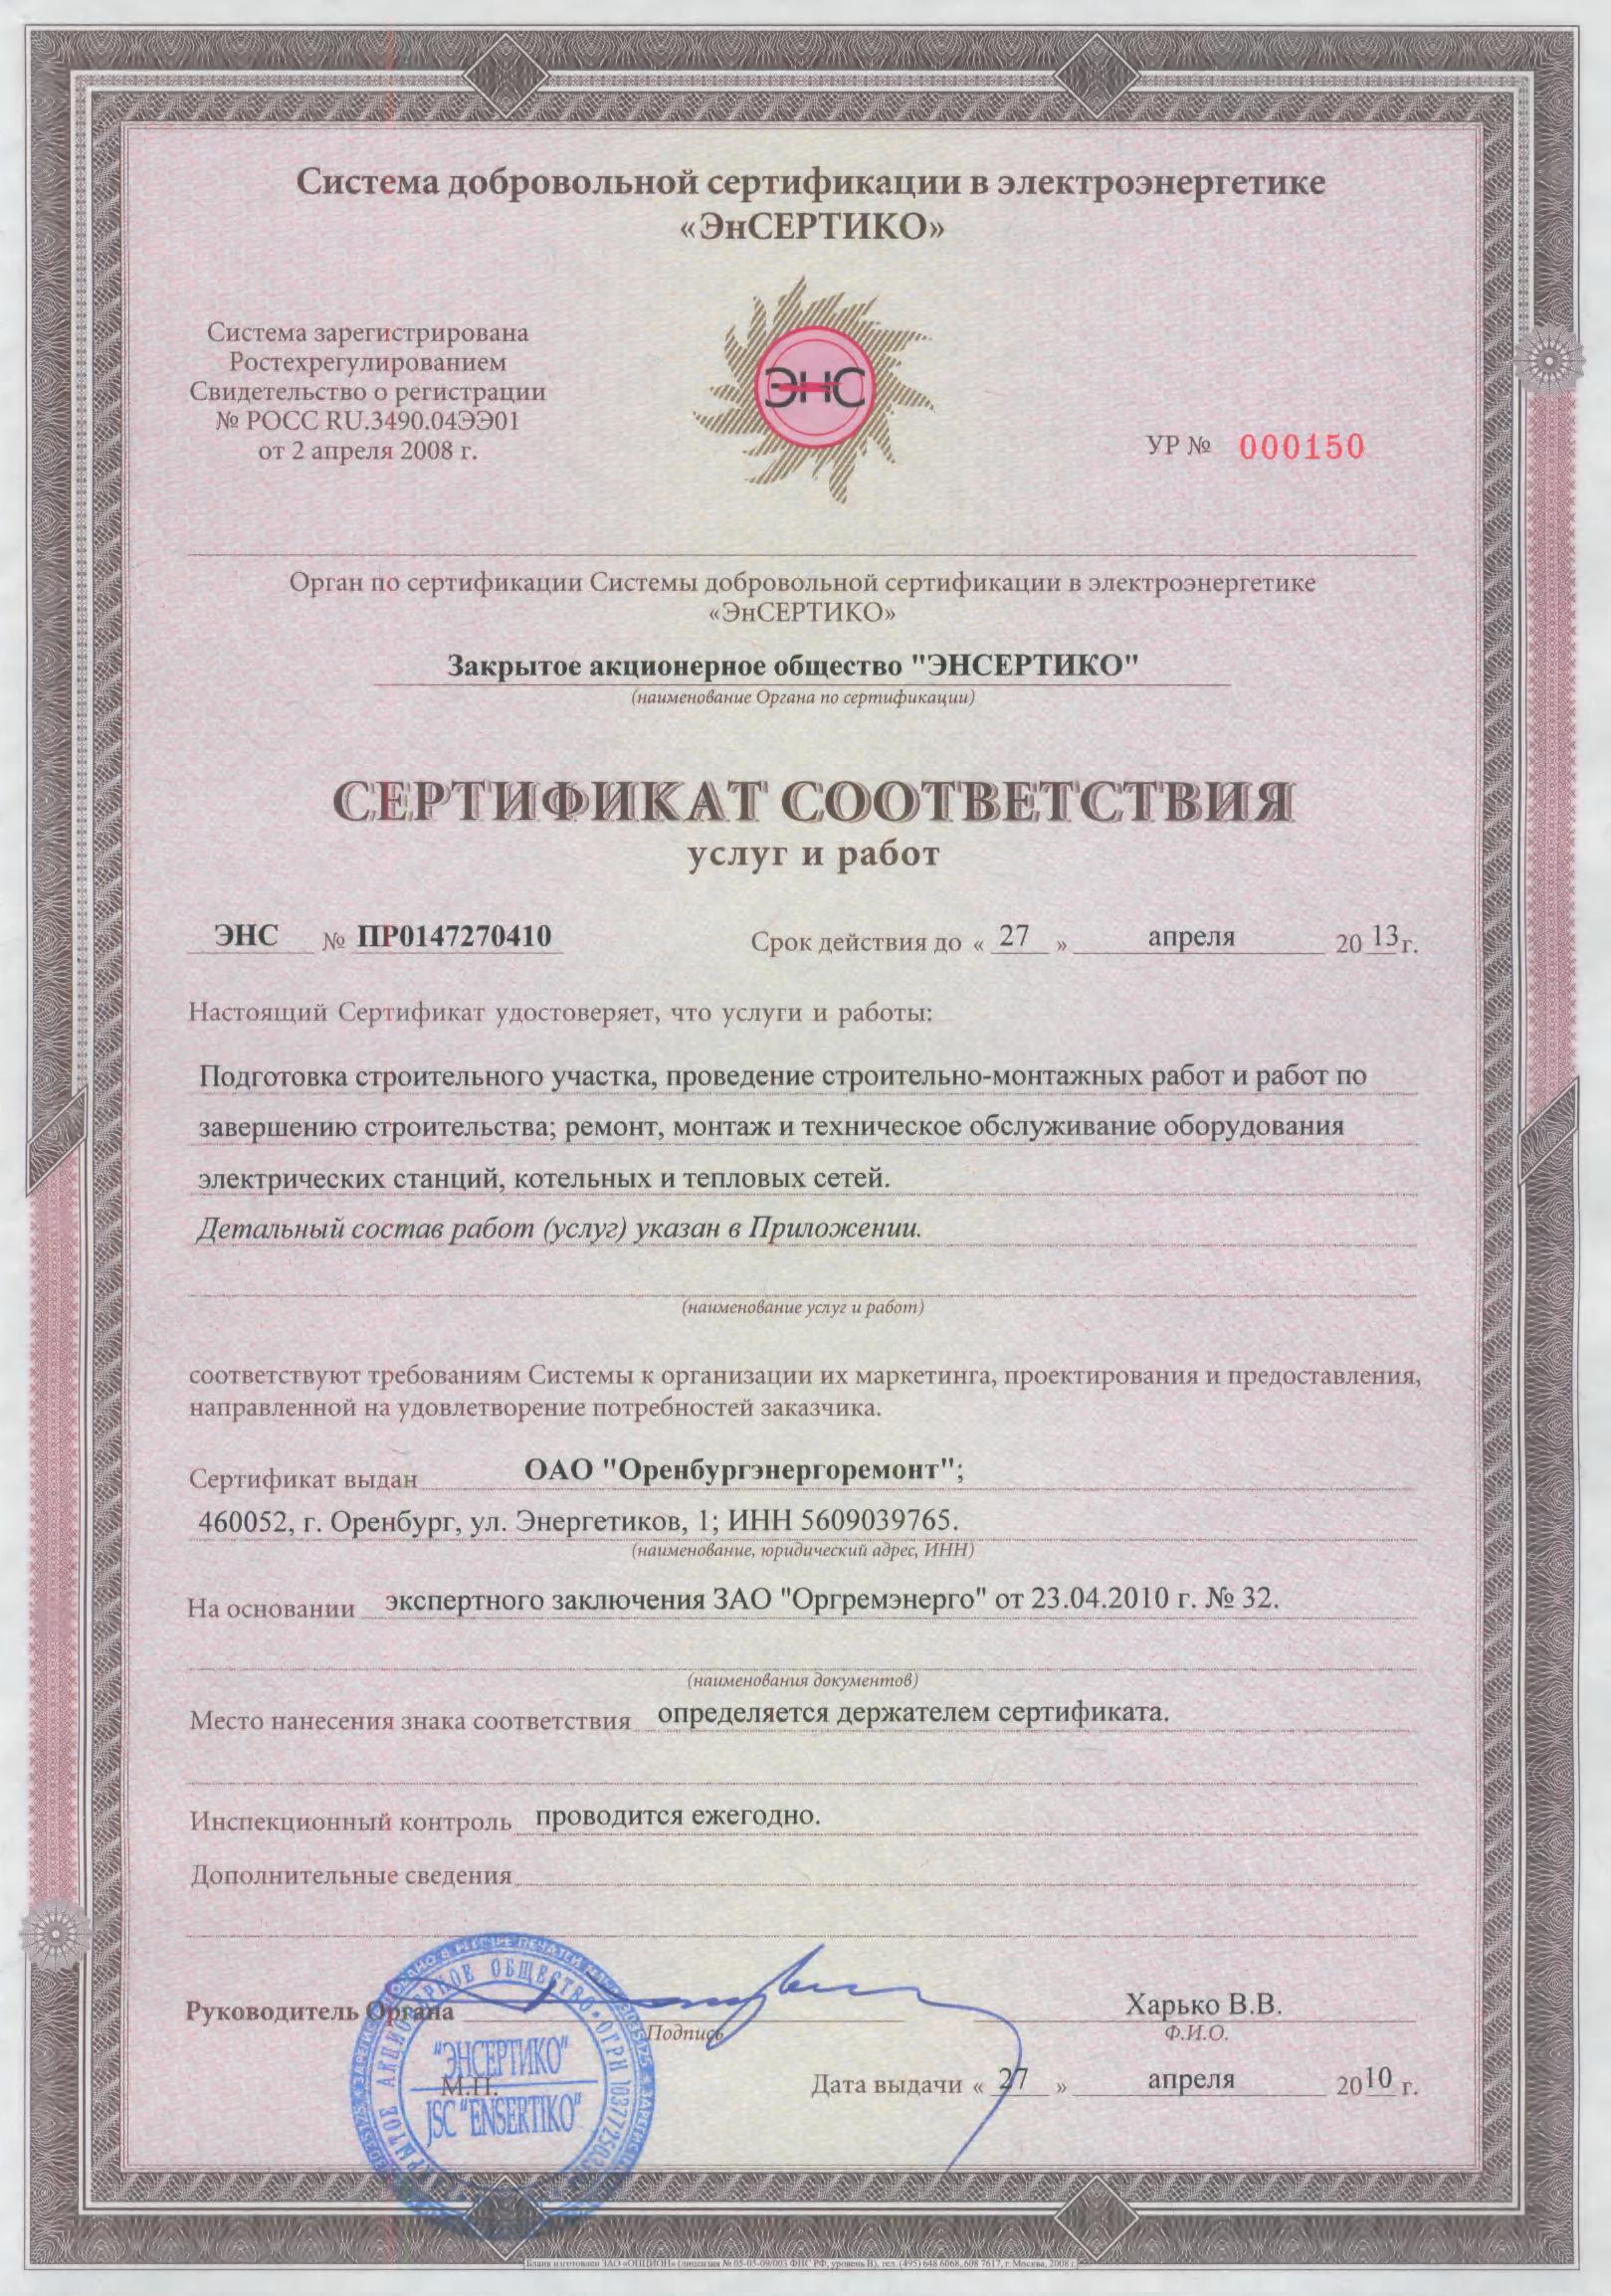 Сертификат соответствия услуг и работ